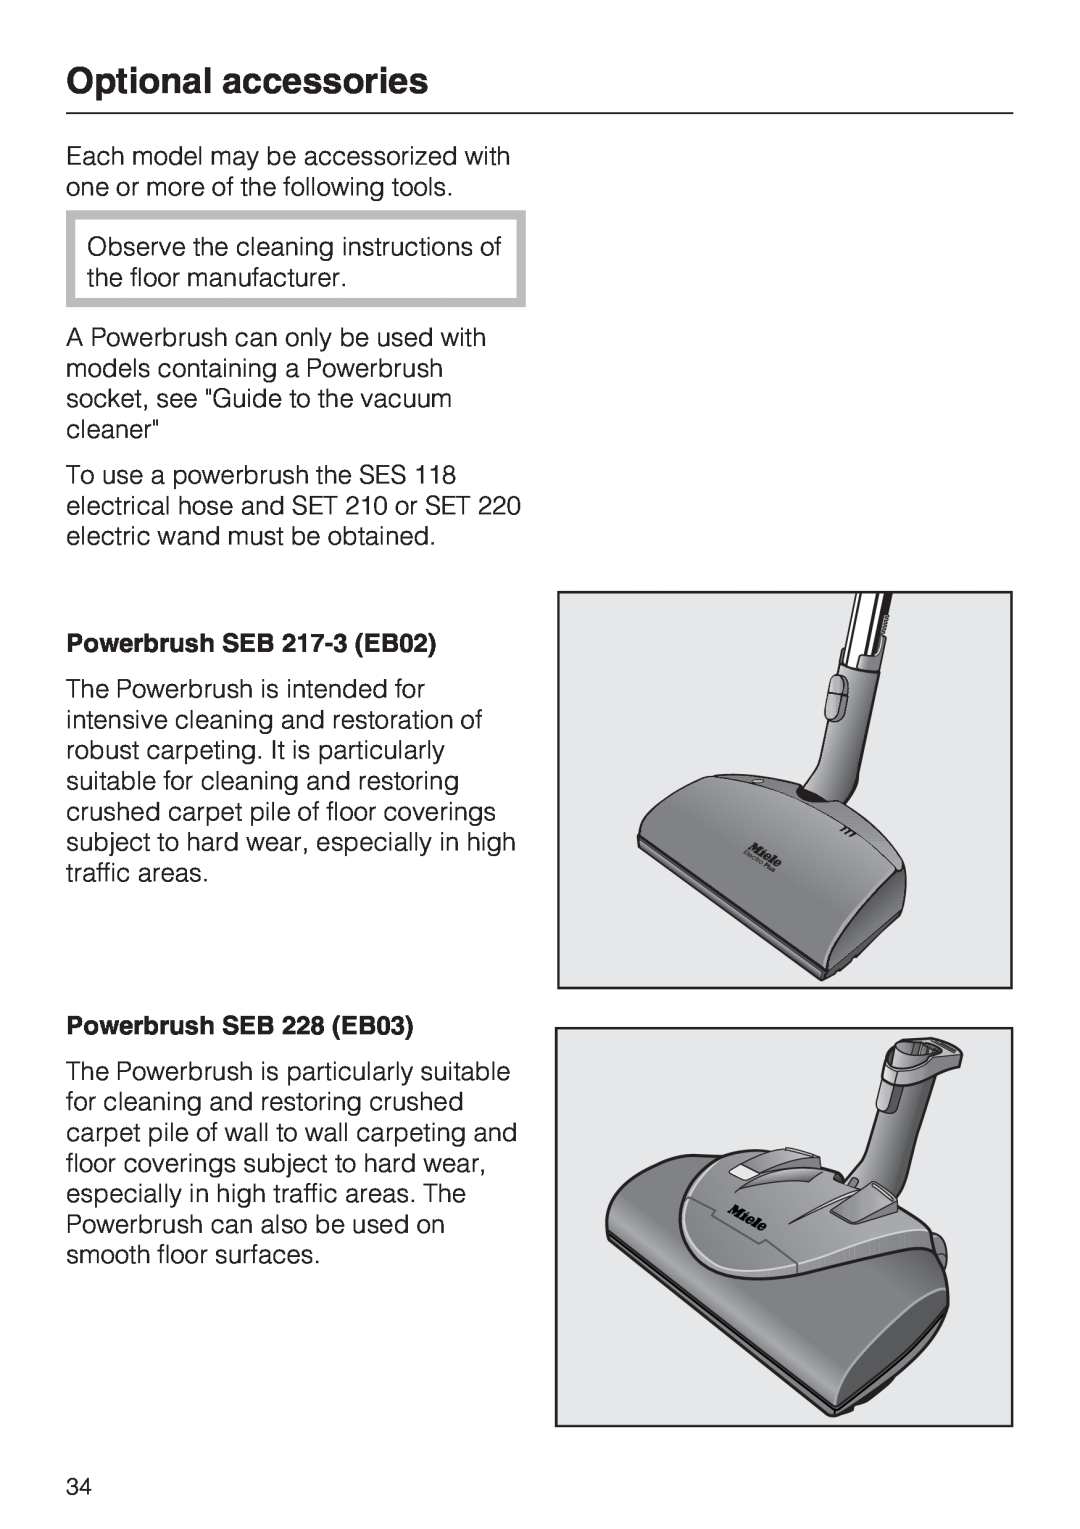 Miele S 700, S 768 manual Optional accessories, Powerbrush SEB 217-3EB02, Powerbrush SEB 228 EB03 